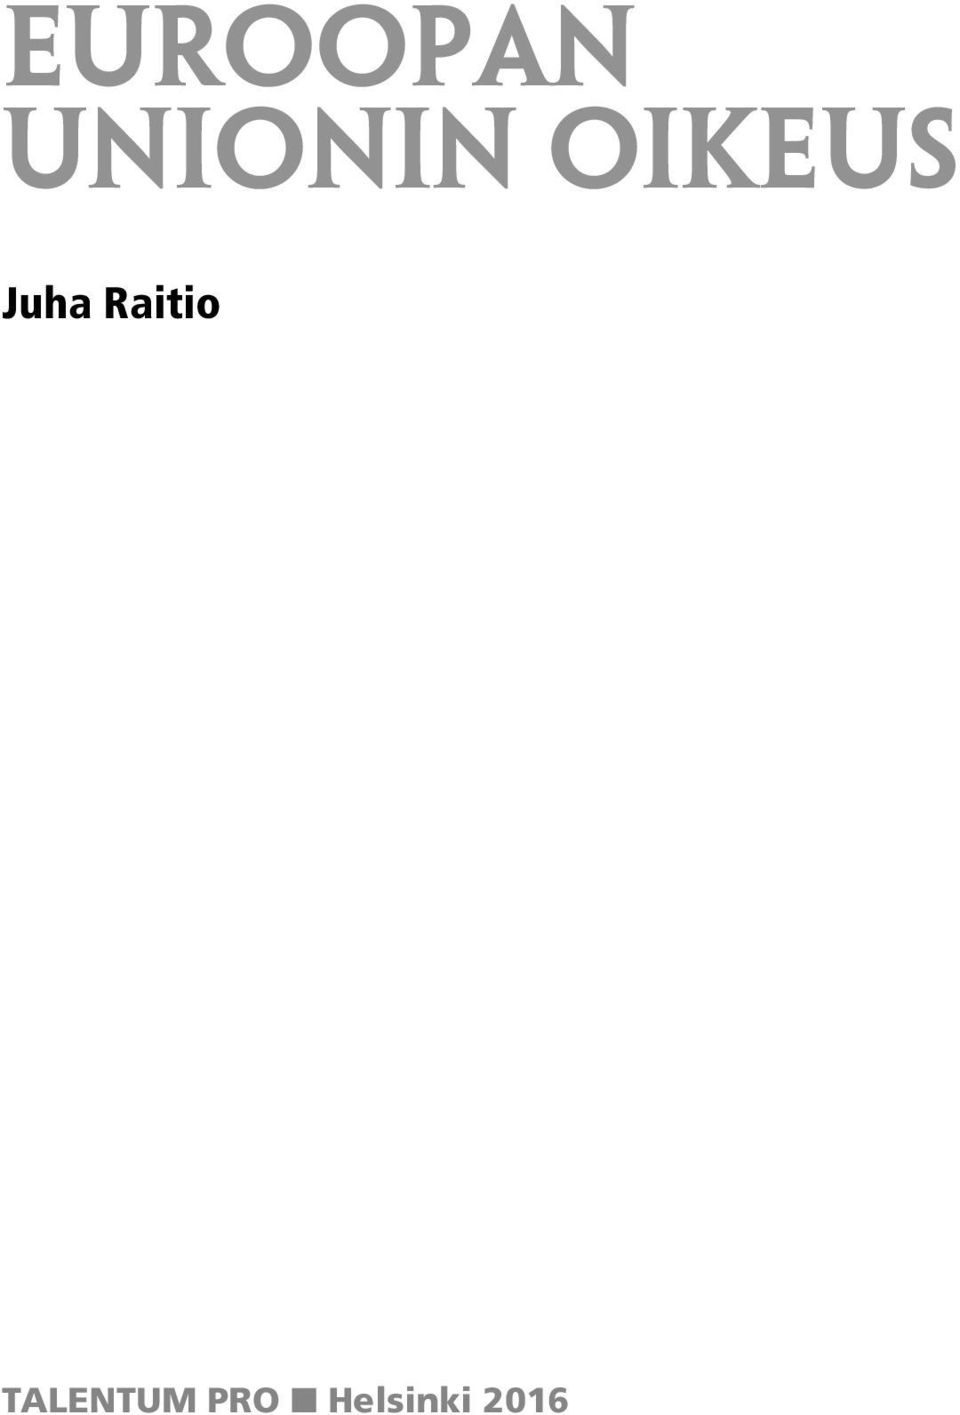 Juha Raitio